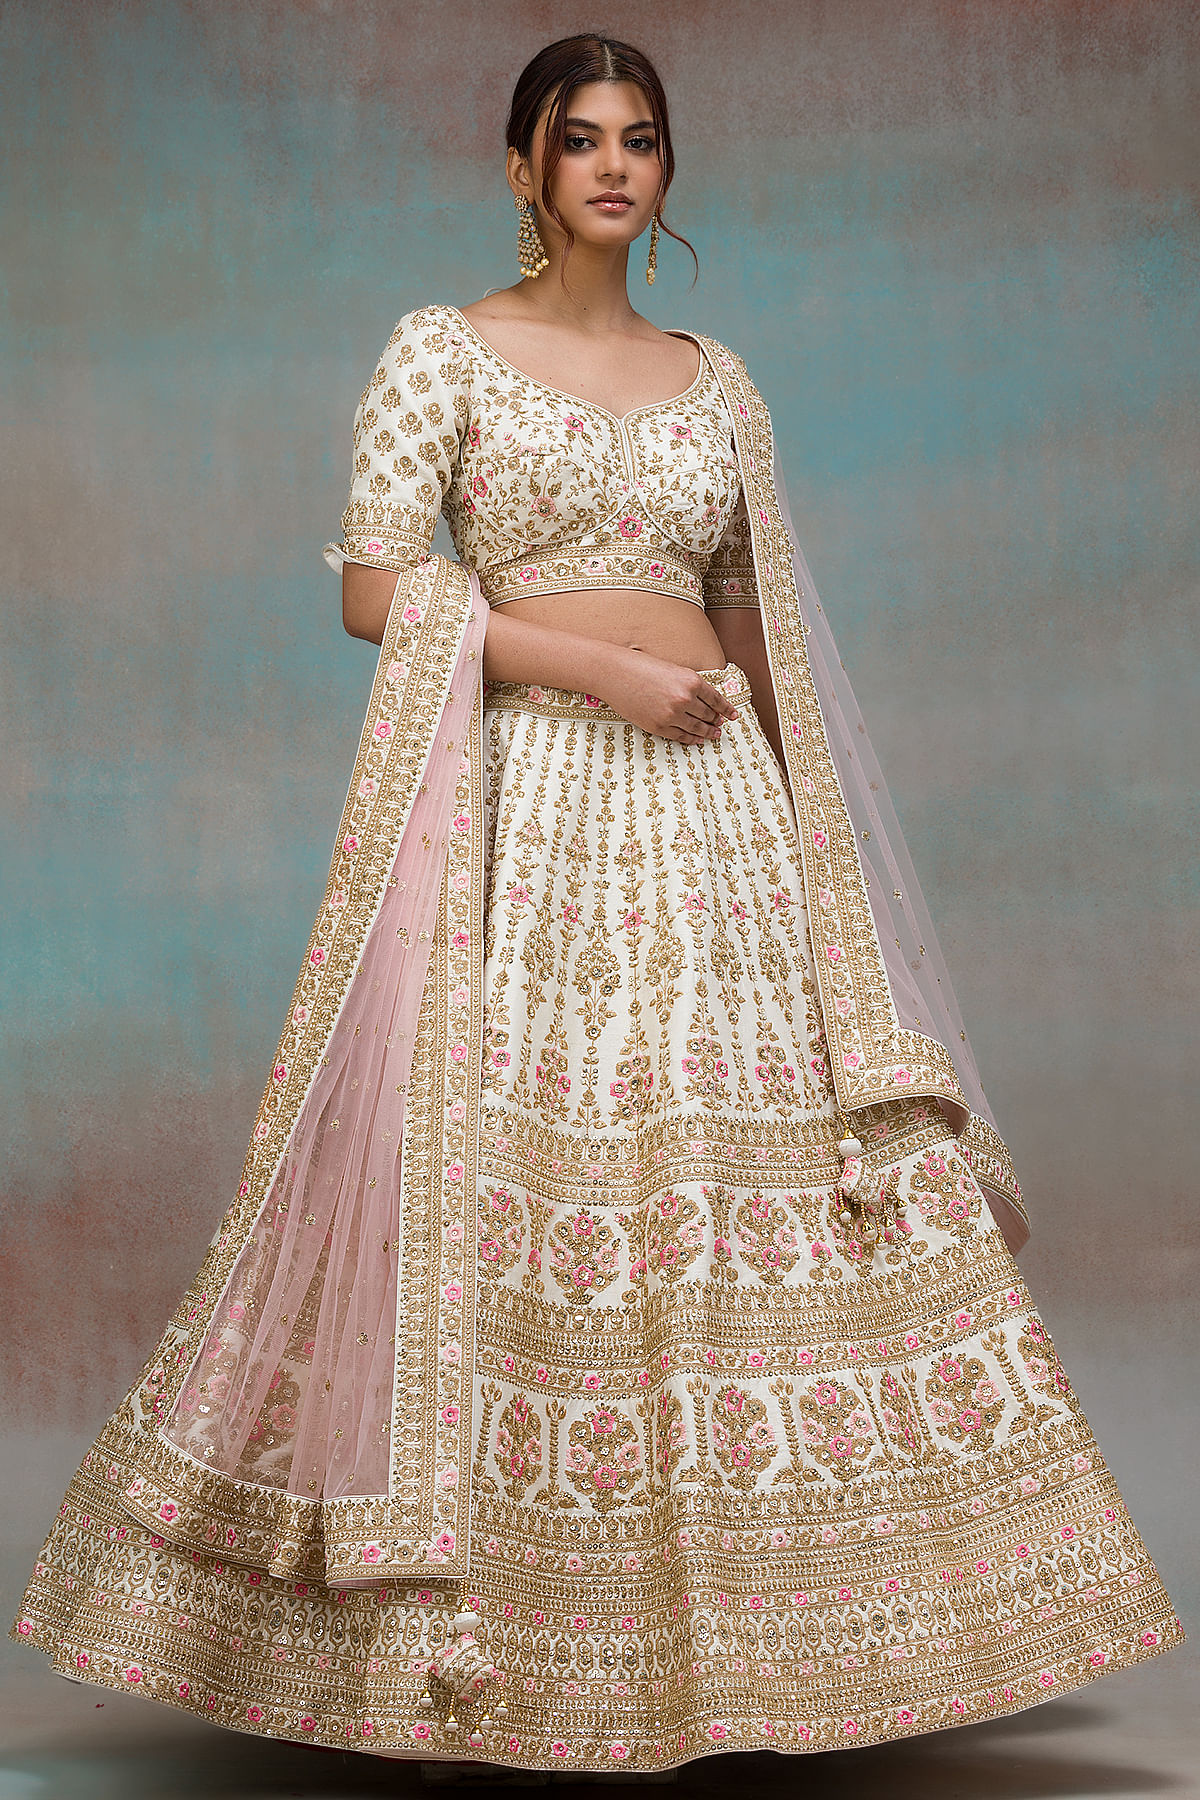 Cream and Pink Color Lehenga Choli For Bride | อินเดีย